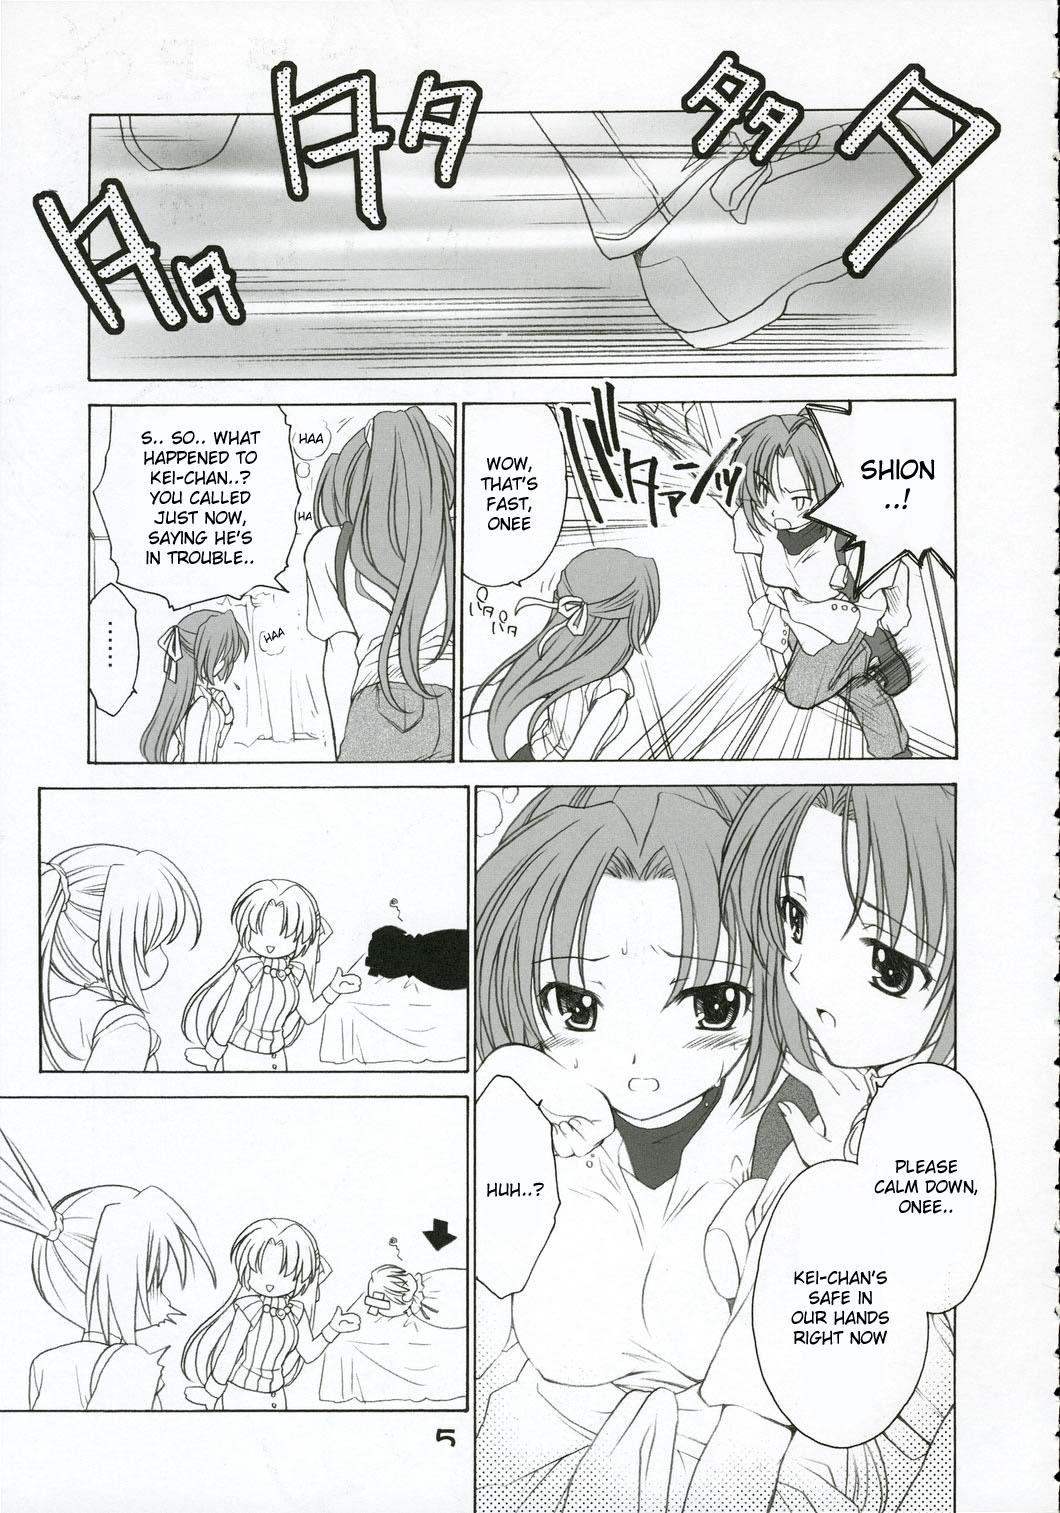 Orgasmo Mion Shion - Higurashi no naku koro ni Cosplay - Page 4